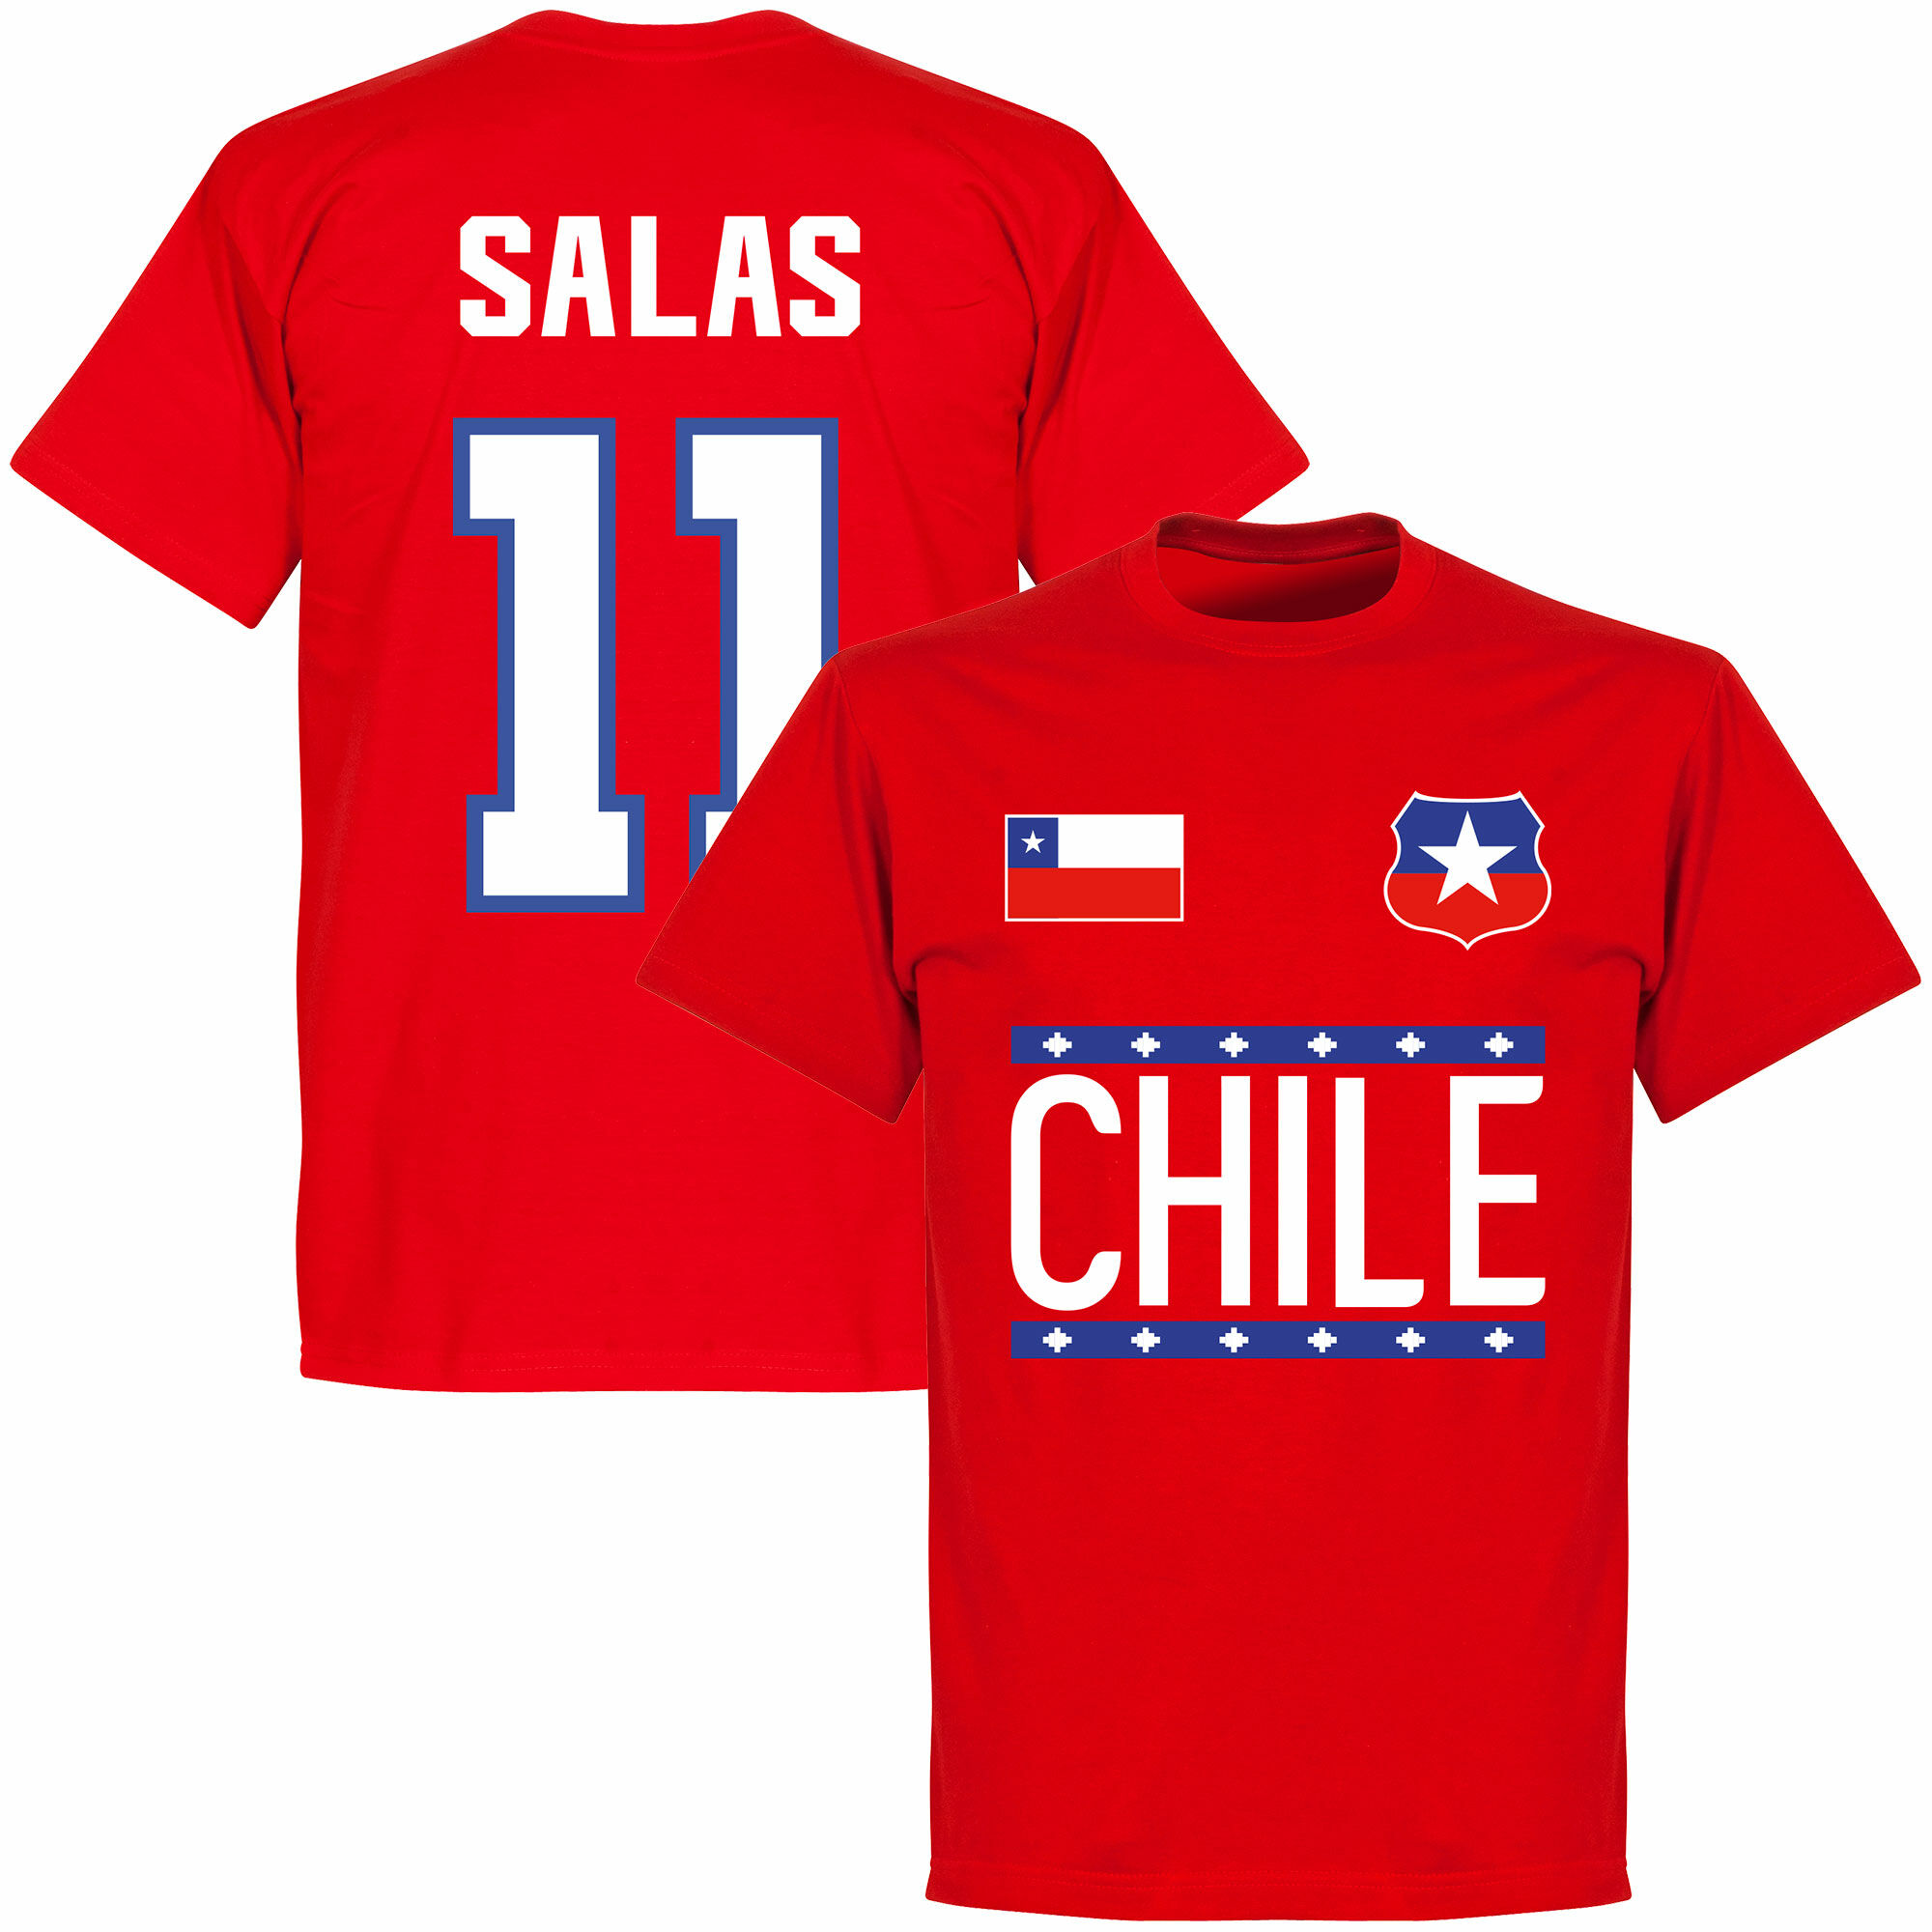 Chile - Tričko - červené, číslo 11, Marcelo Salas